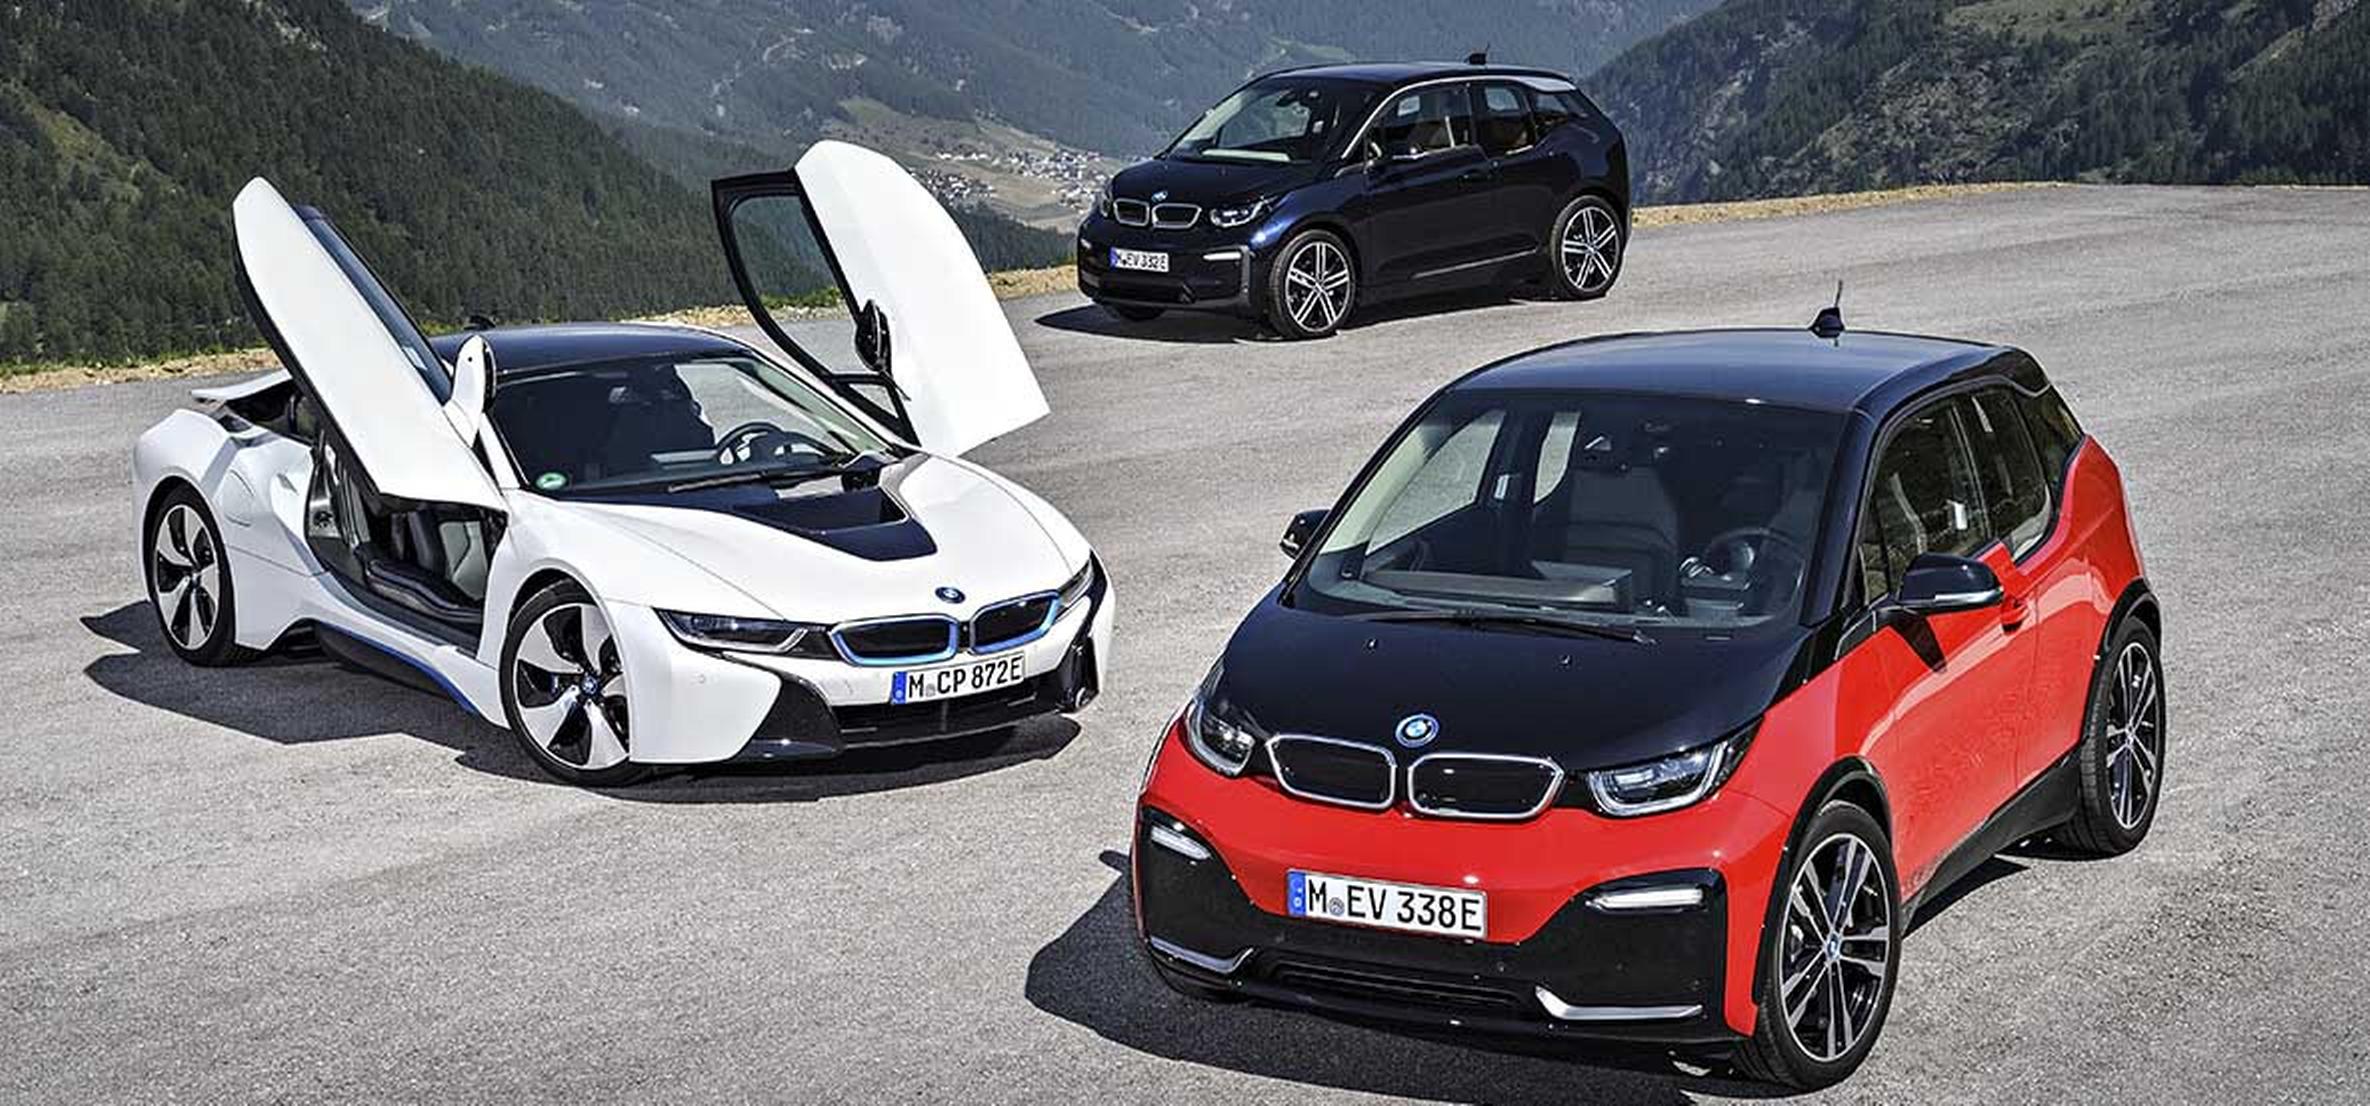 BMW hace inversión millonaria en autos eléctricos